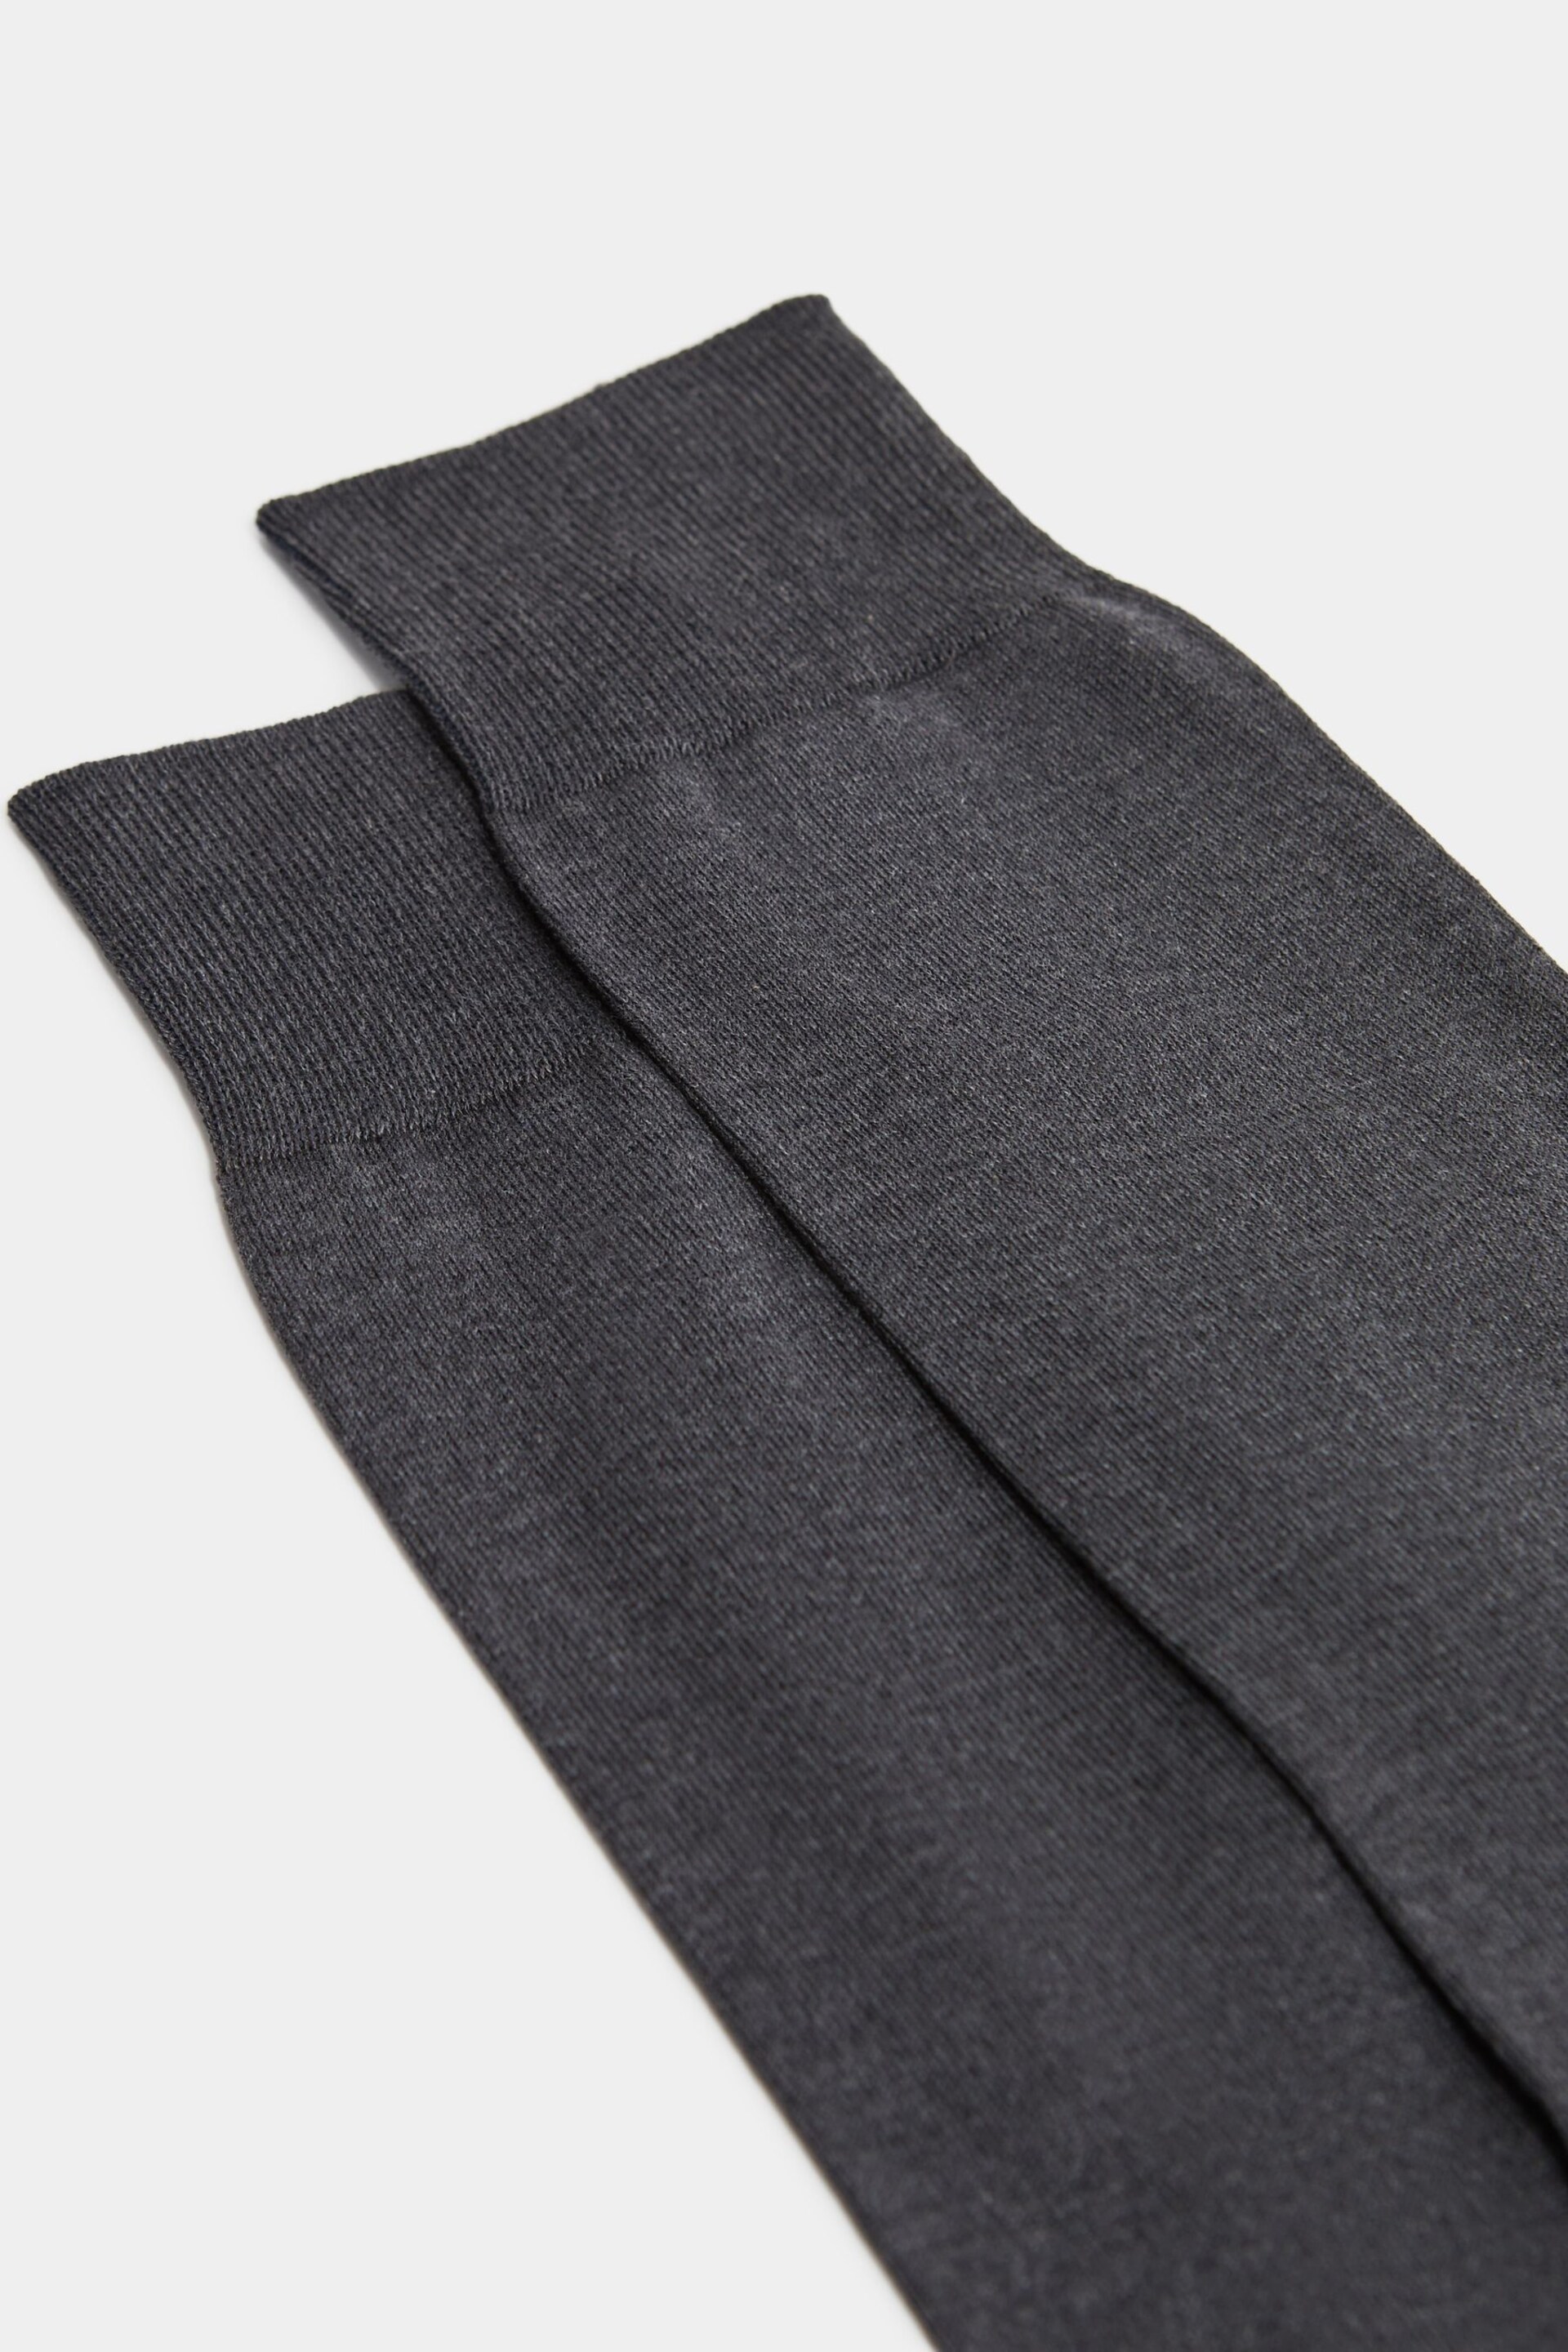 Reiss Mid Grey Mari Mercerised Cotton Blend Sock - Image 2 of 3